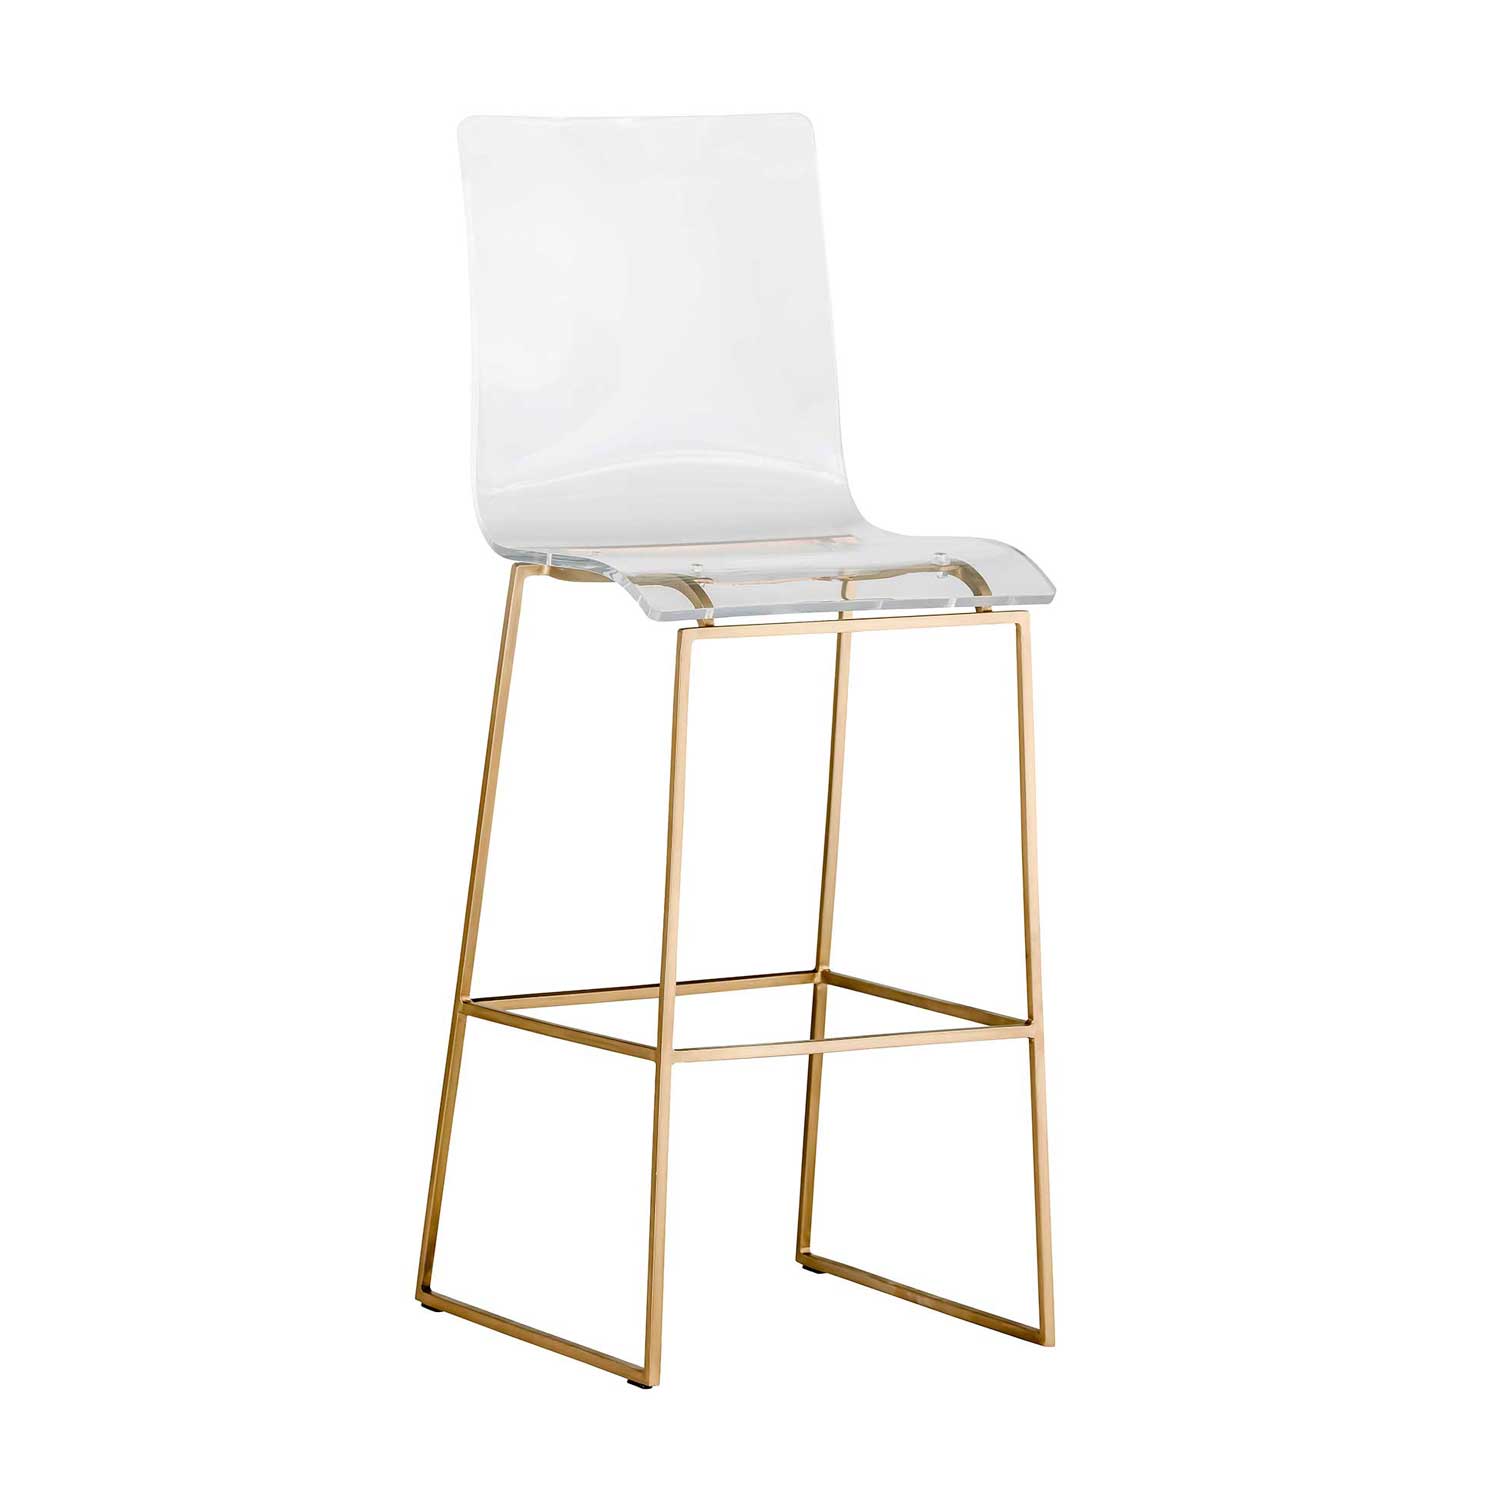 king bar stool – gold thumbnail image